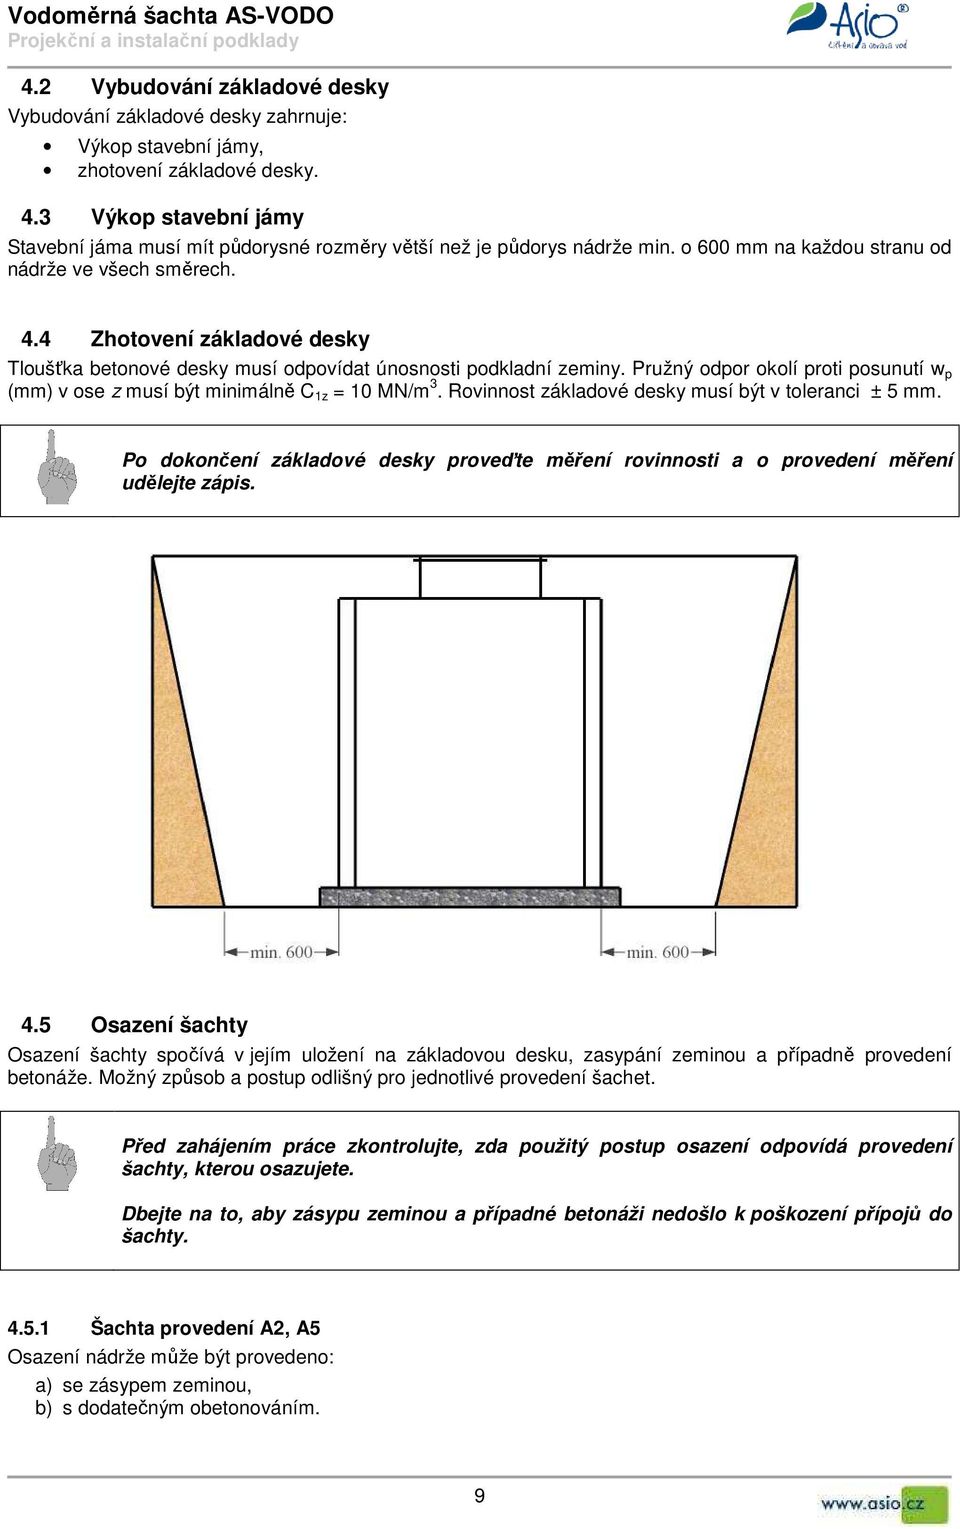 4 Zhotovení základové desky Tloušťka betonové desky musí odpovídat únosnosti podkladní zeminy. Pružný odpor okolí proti posunutí w p (mm) v ose z musí být minimálně C 1z = 10 MN/m 3.